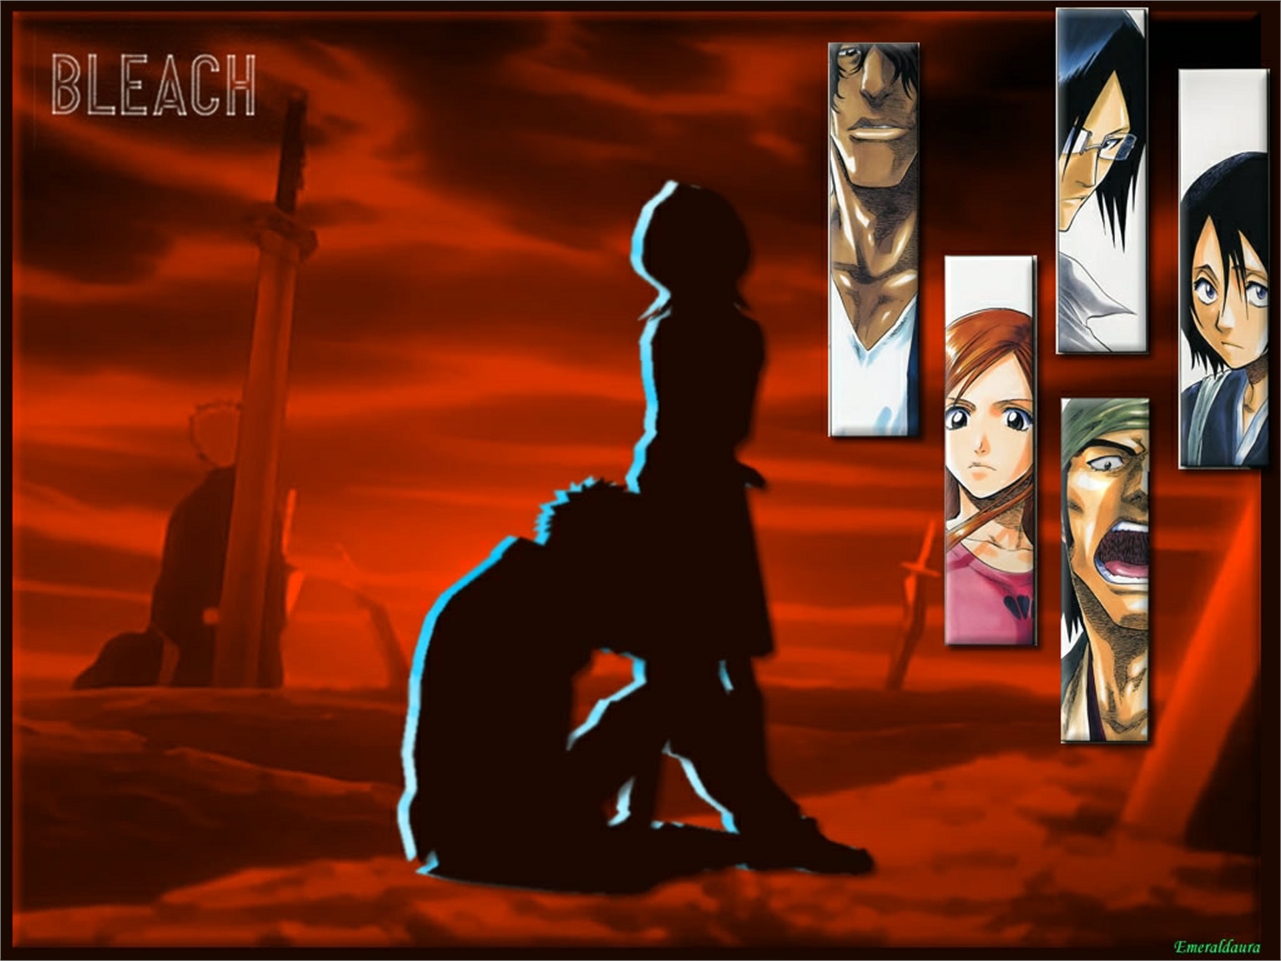 Descarga gratuita de fondo de pantalla para móvil de Animado, Rukia Kuchiki, Bleach: Burîchi, Ichigo Kurosaki, Hanataro Yamada, Orihime Inoue, Uryu Ishida, Yasutora Sado.